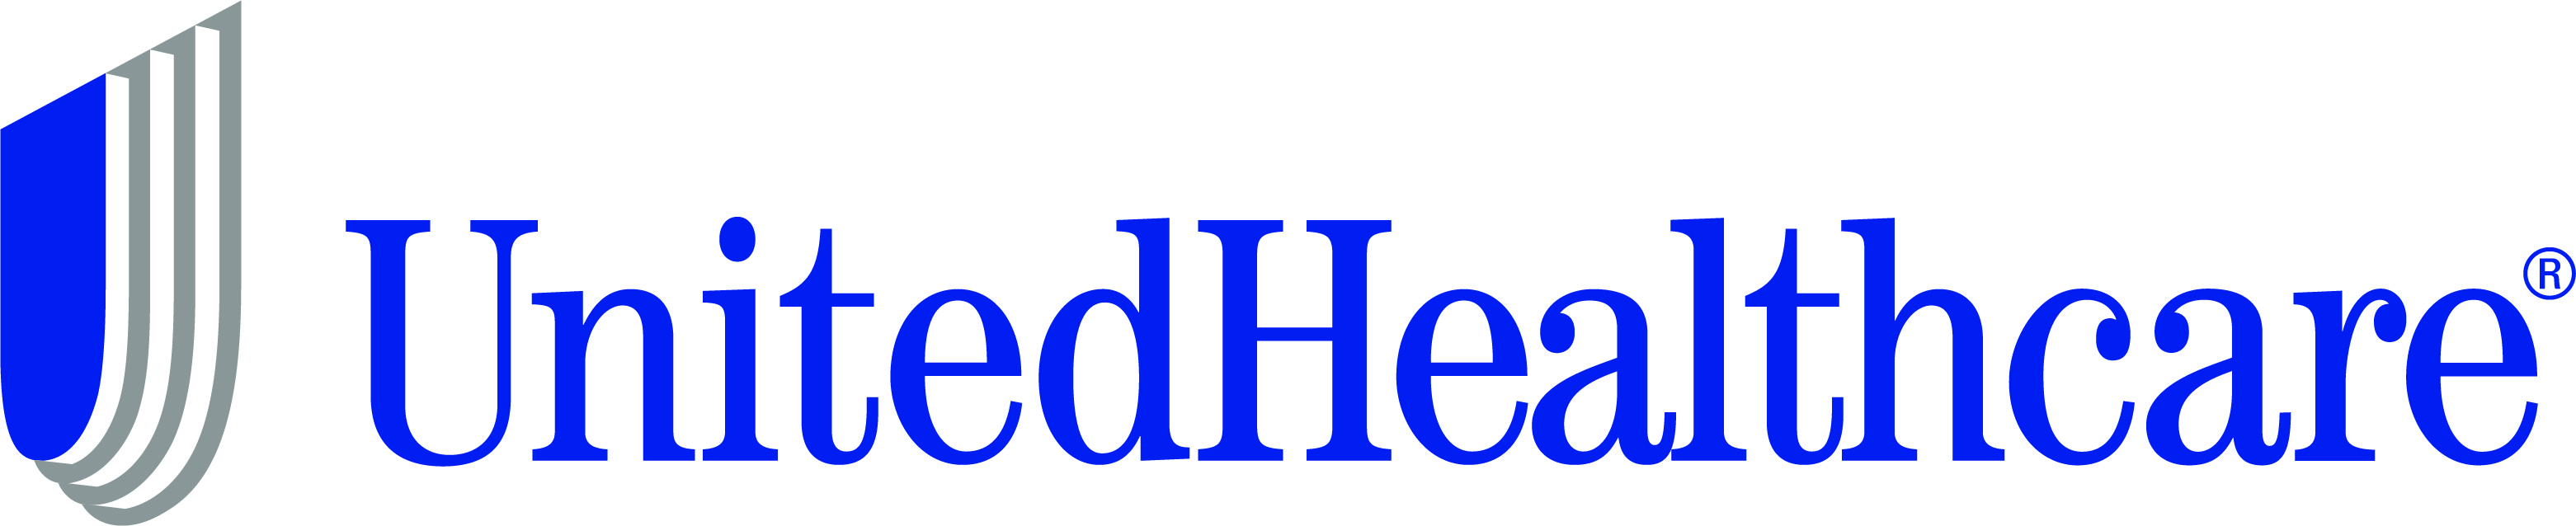 _United Healthcare-logo_.jpg